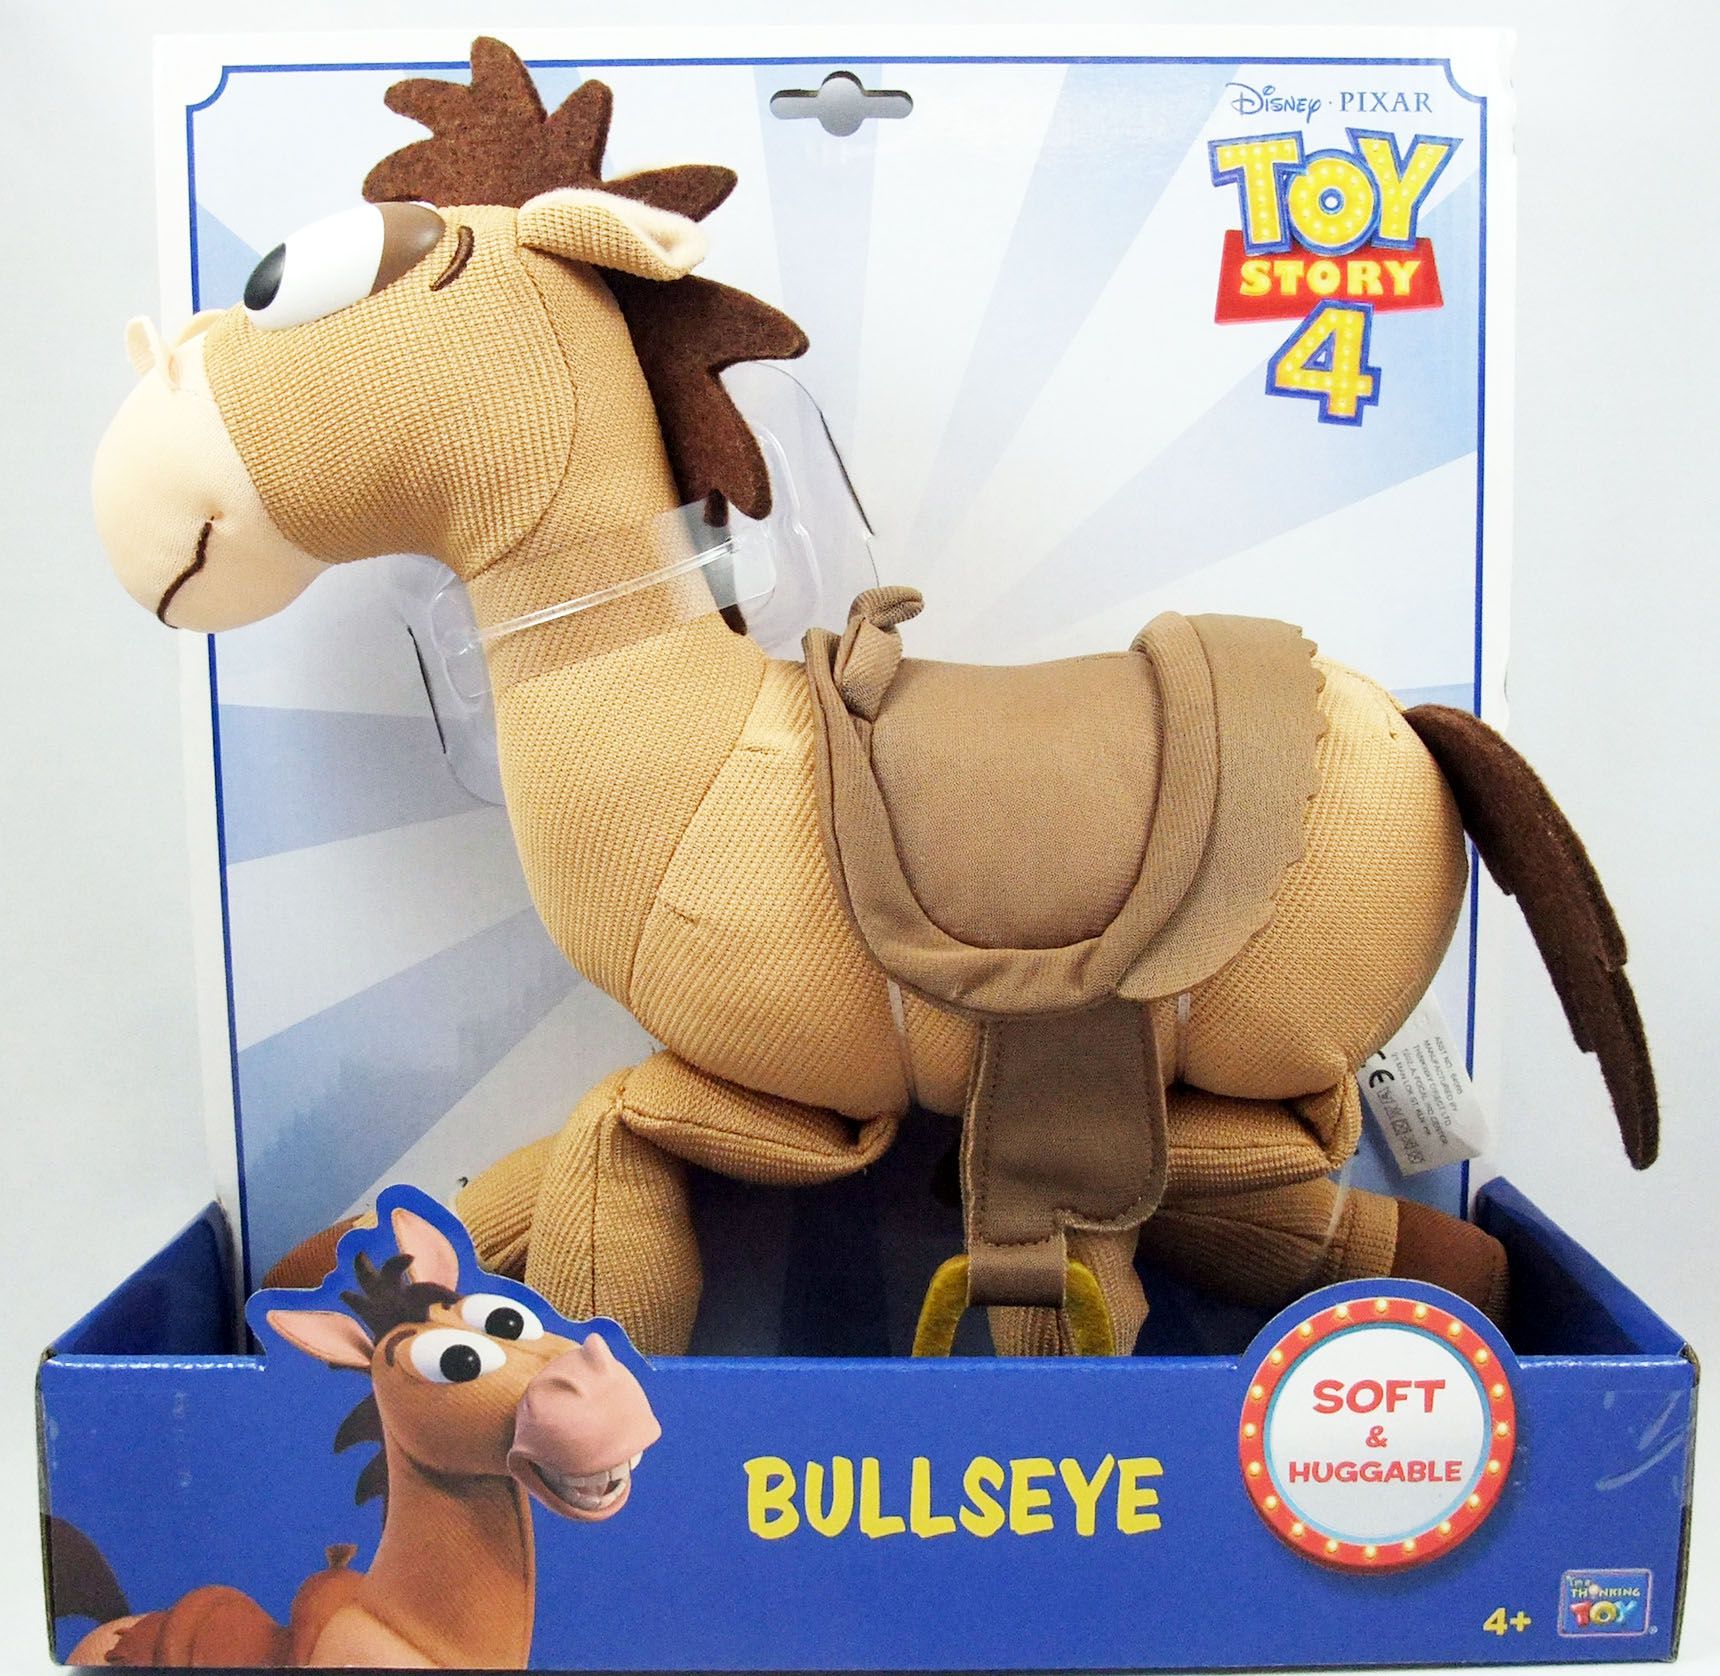 Baby Kingdom: Bullseye Toy Story Toy